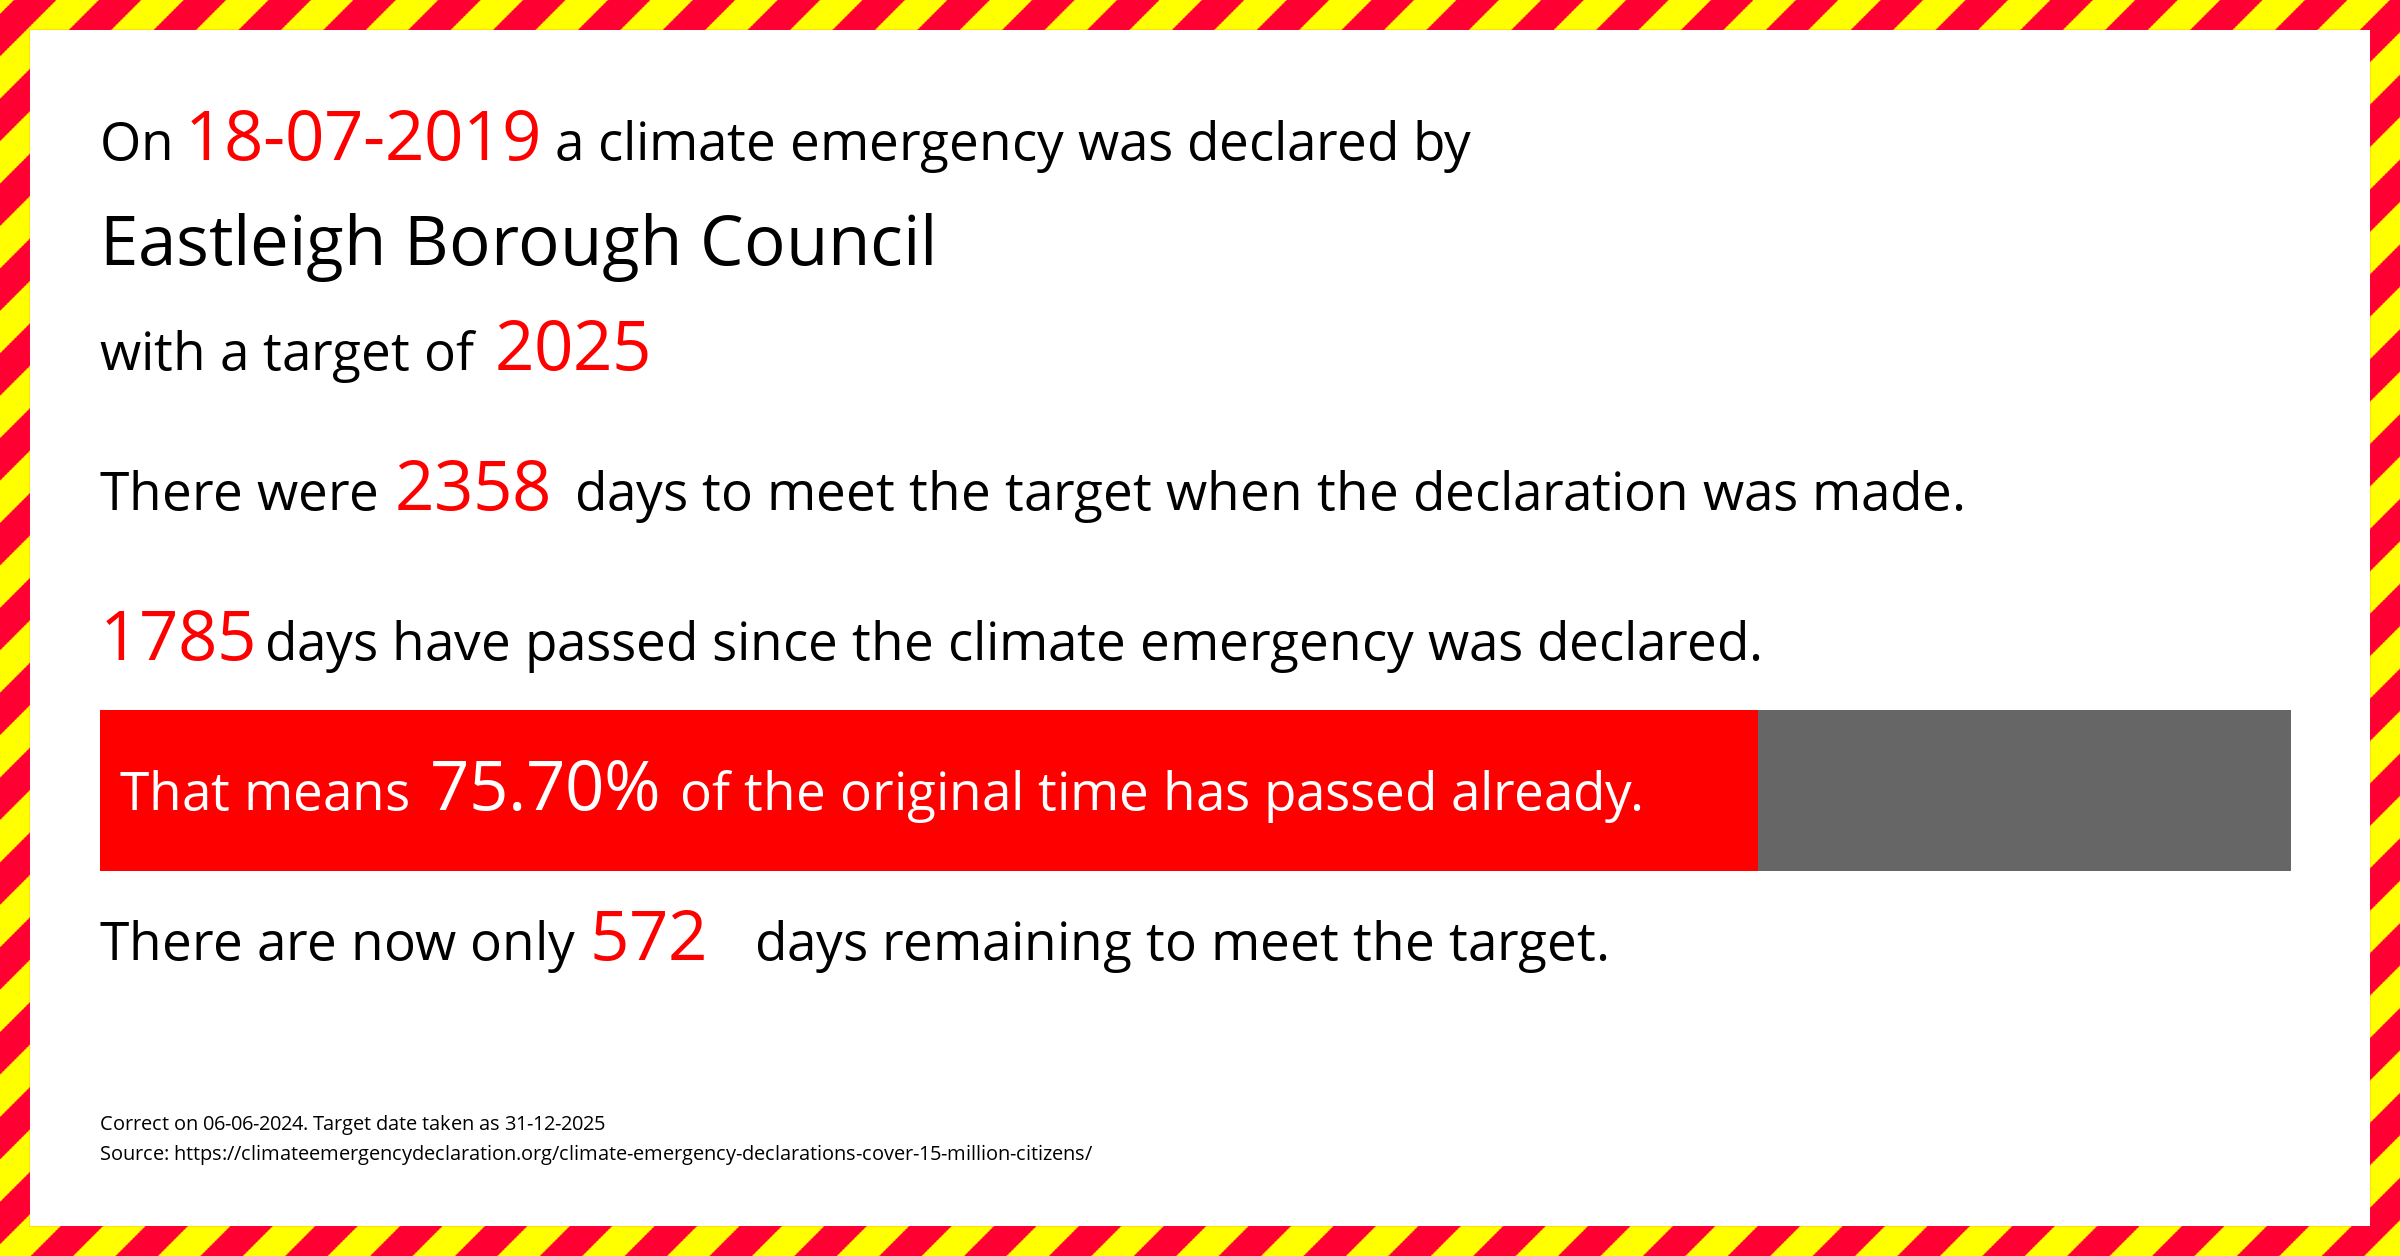 eastleigh-borough-council-climate-emergency